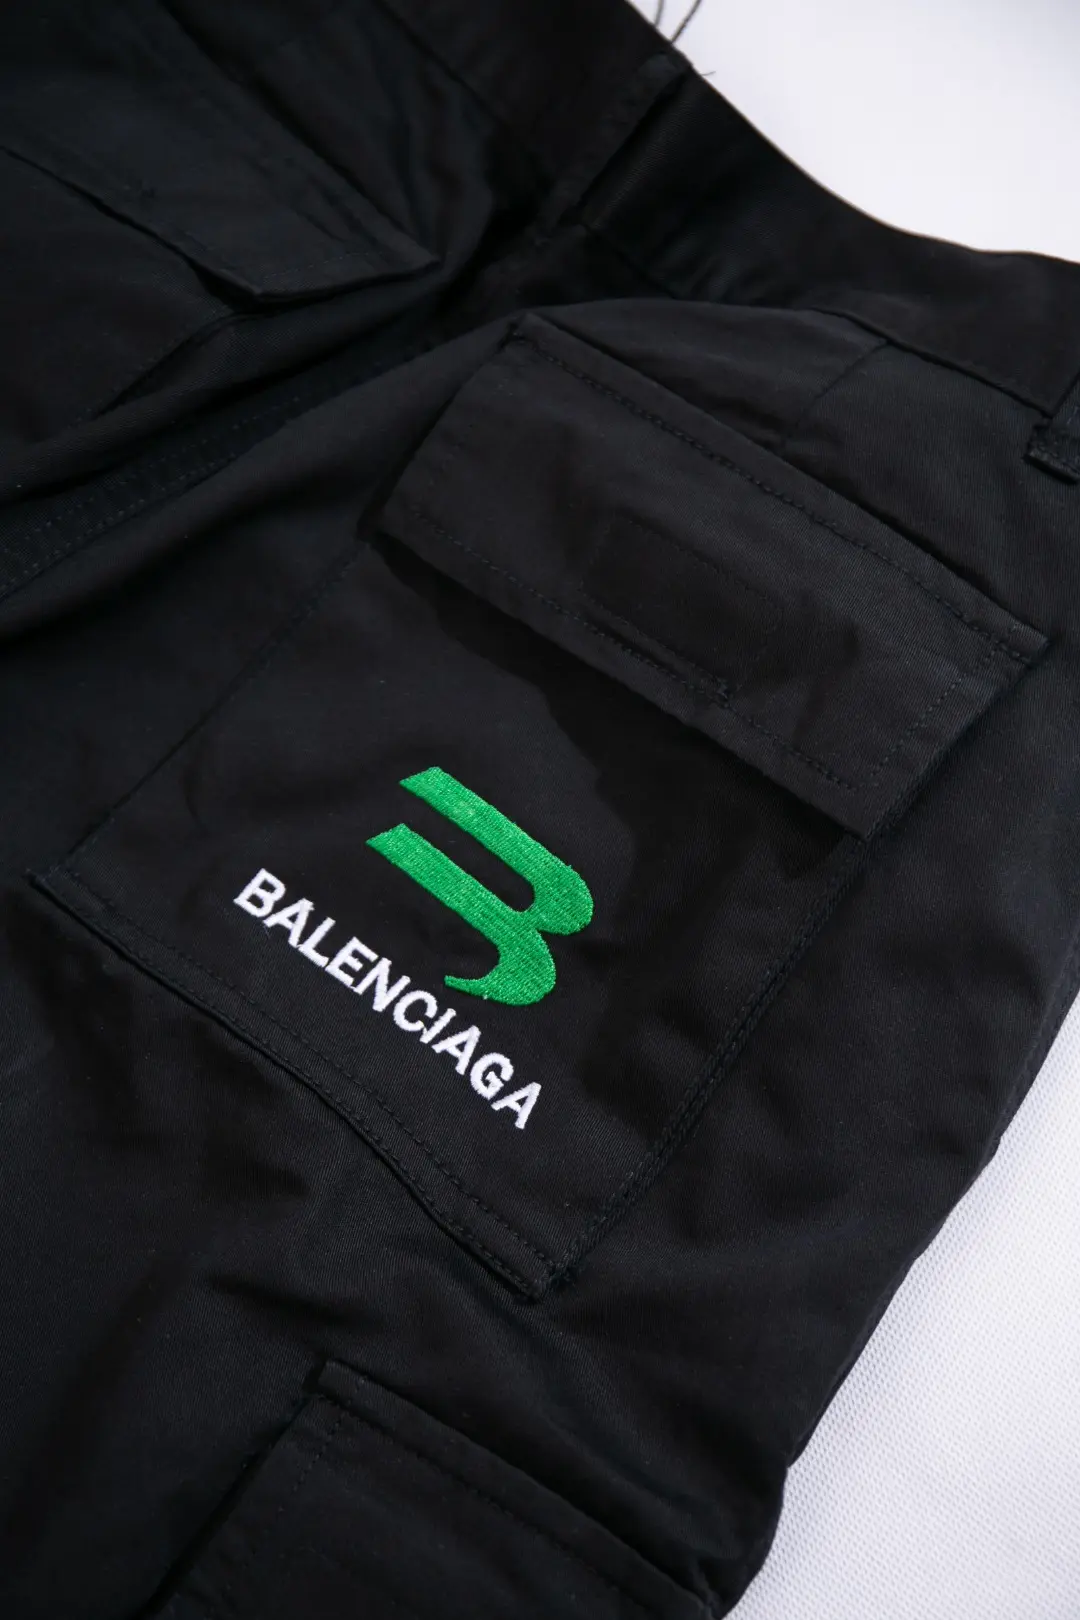 BALENCIAGA 2022SS fashion shorts in black